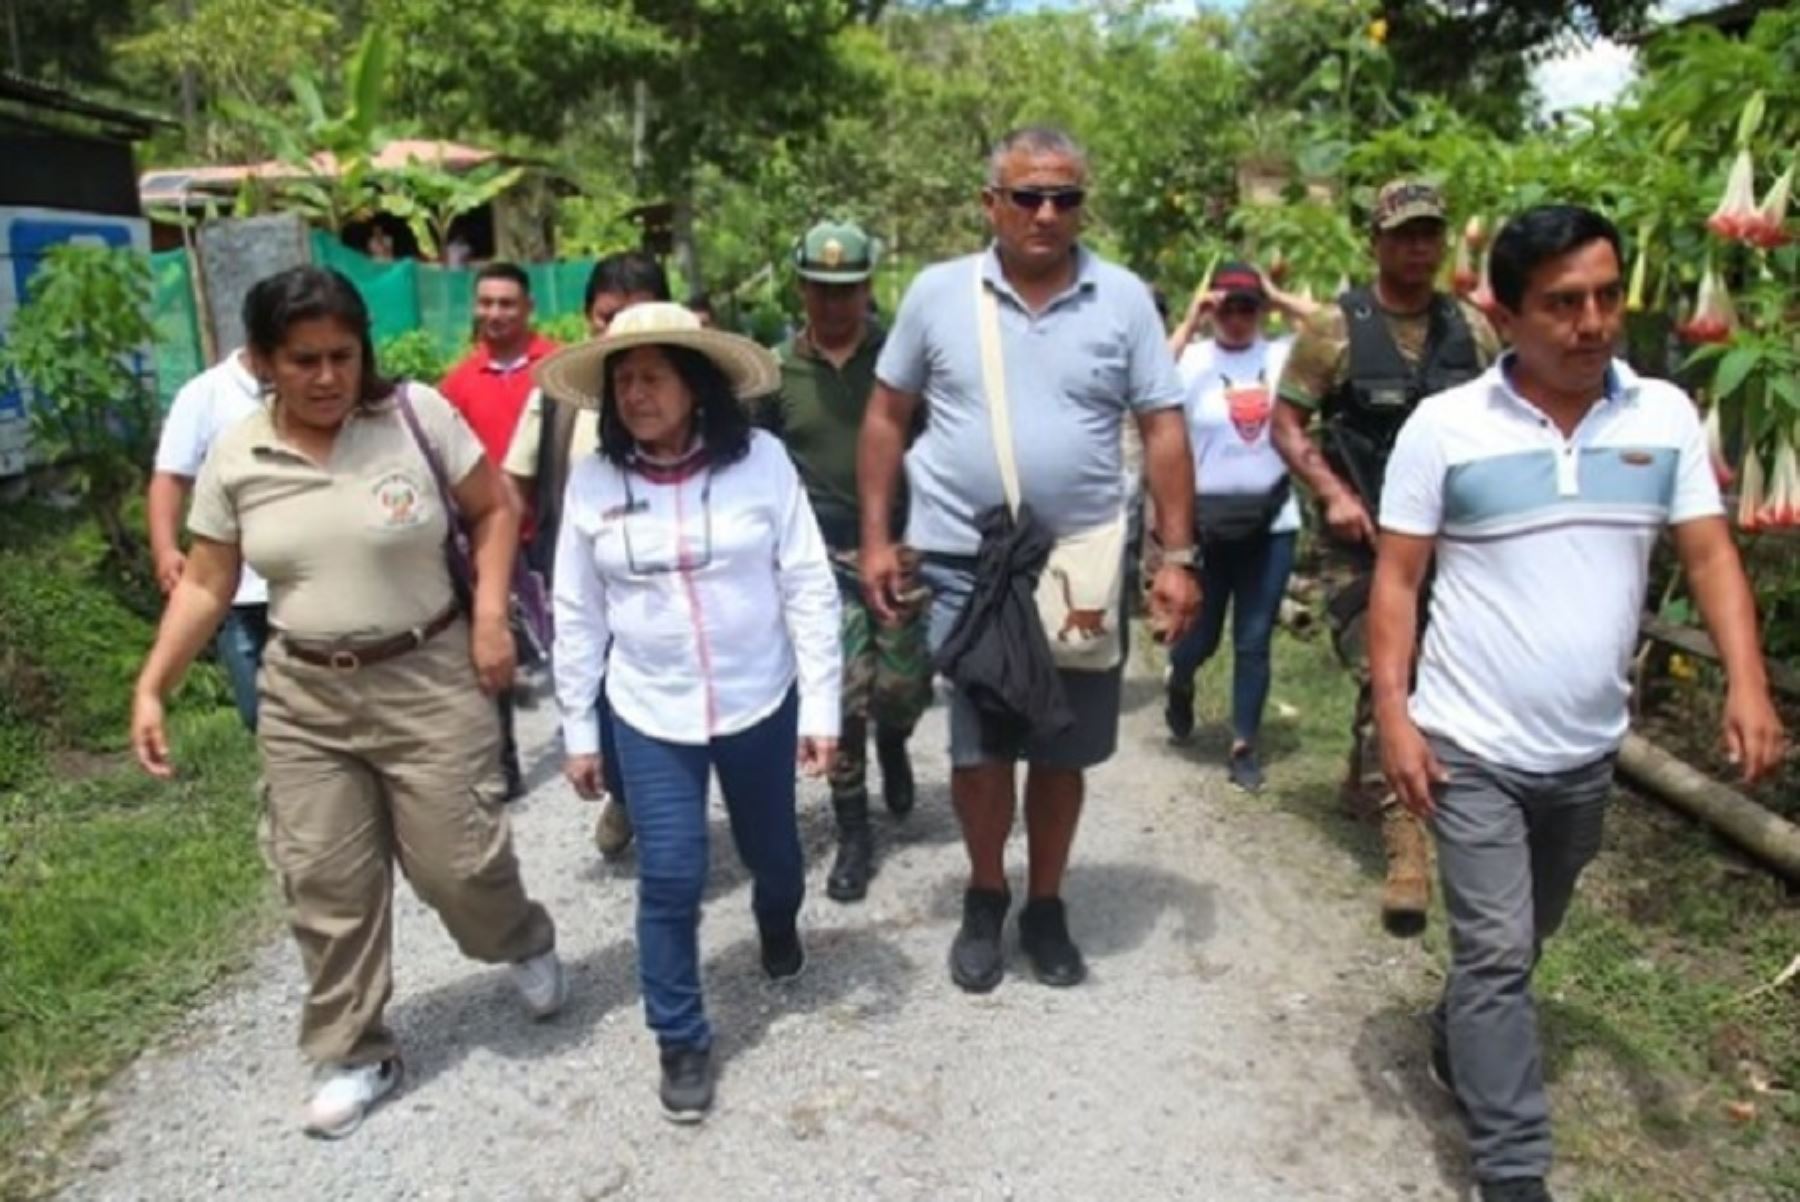 El próximo 28 de enero se realizará la Gran Cruzada del Alto Mayo, en la región San Martín, que es una iniciativa conjunta entre la ciudadanía y el Ministerio del Ambiente (Minam), anunció la titular del sector, Albina Ruiz, en su visita a esa región del nororiente peruano.